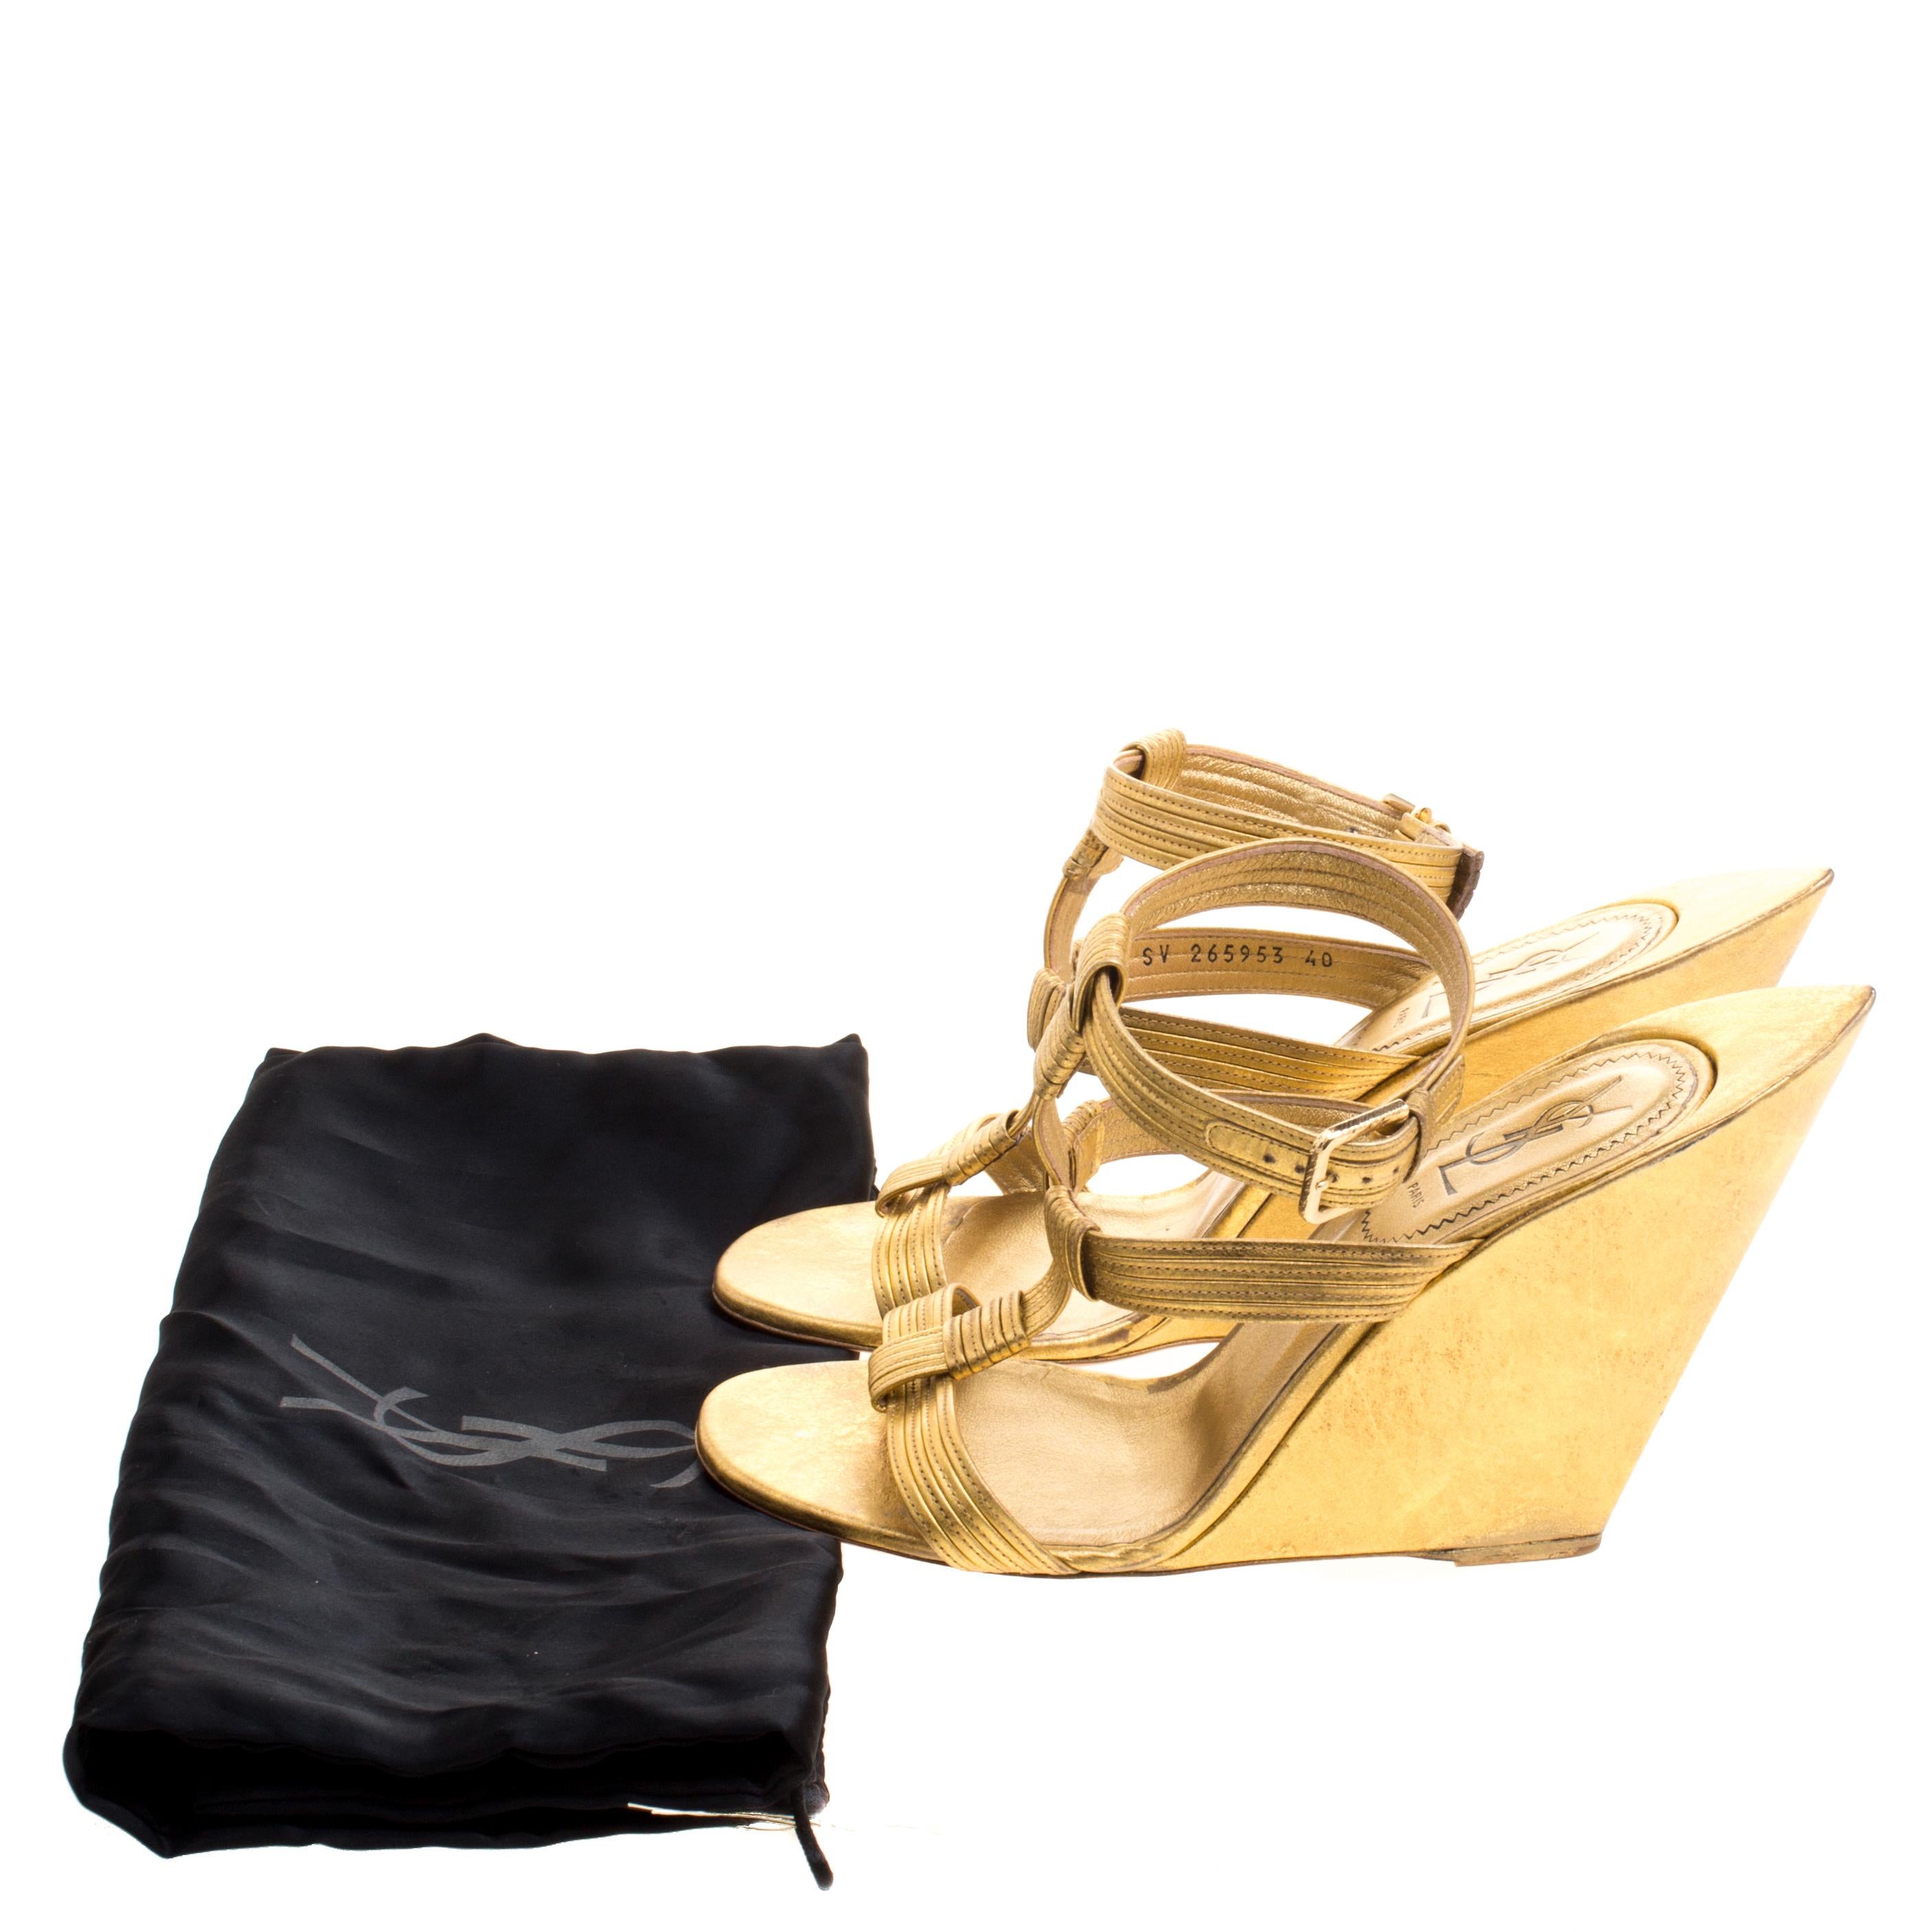 Saint Laurent Paris Metallic Gold Leather Venice Sculpted Wedge Sandals Size 40 4